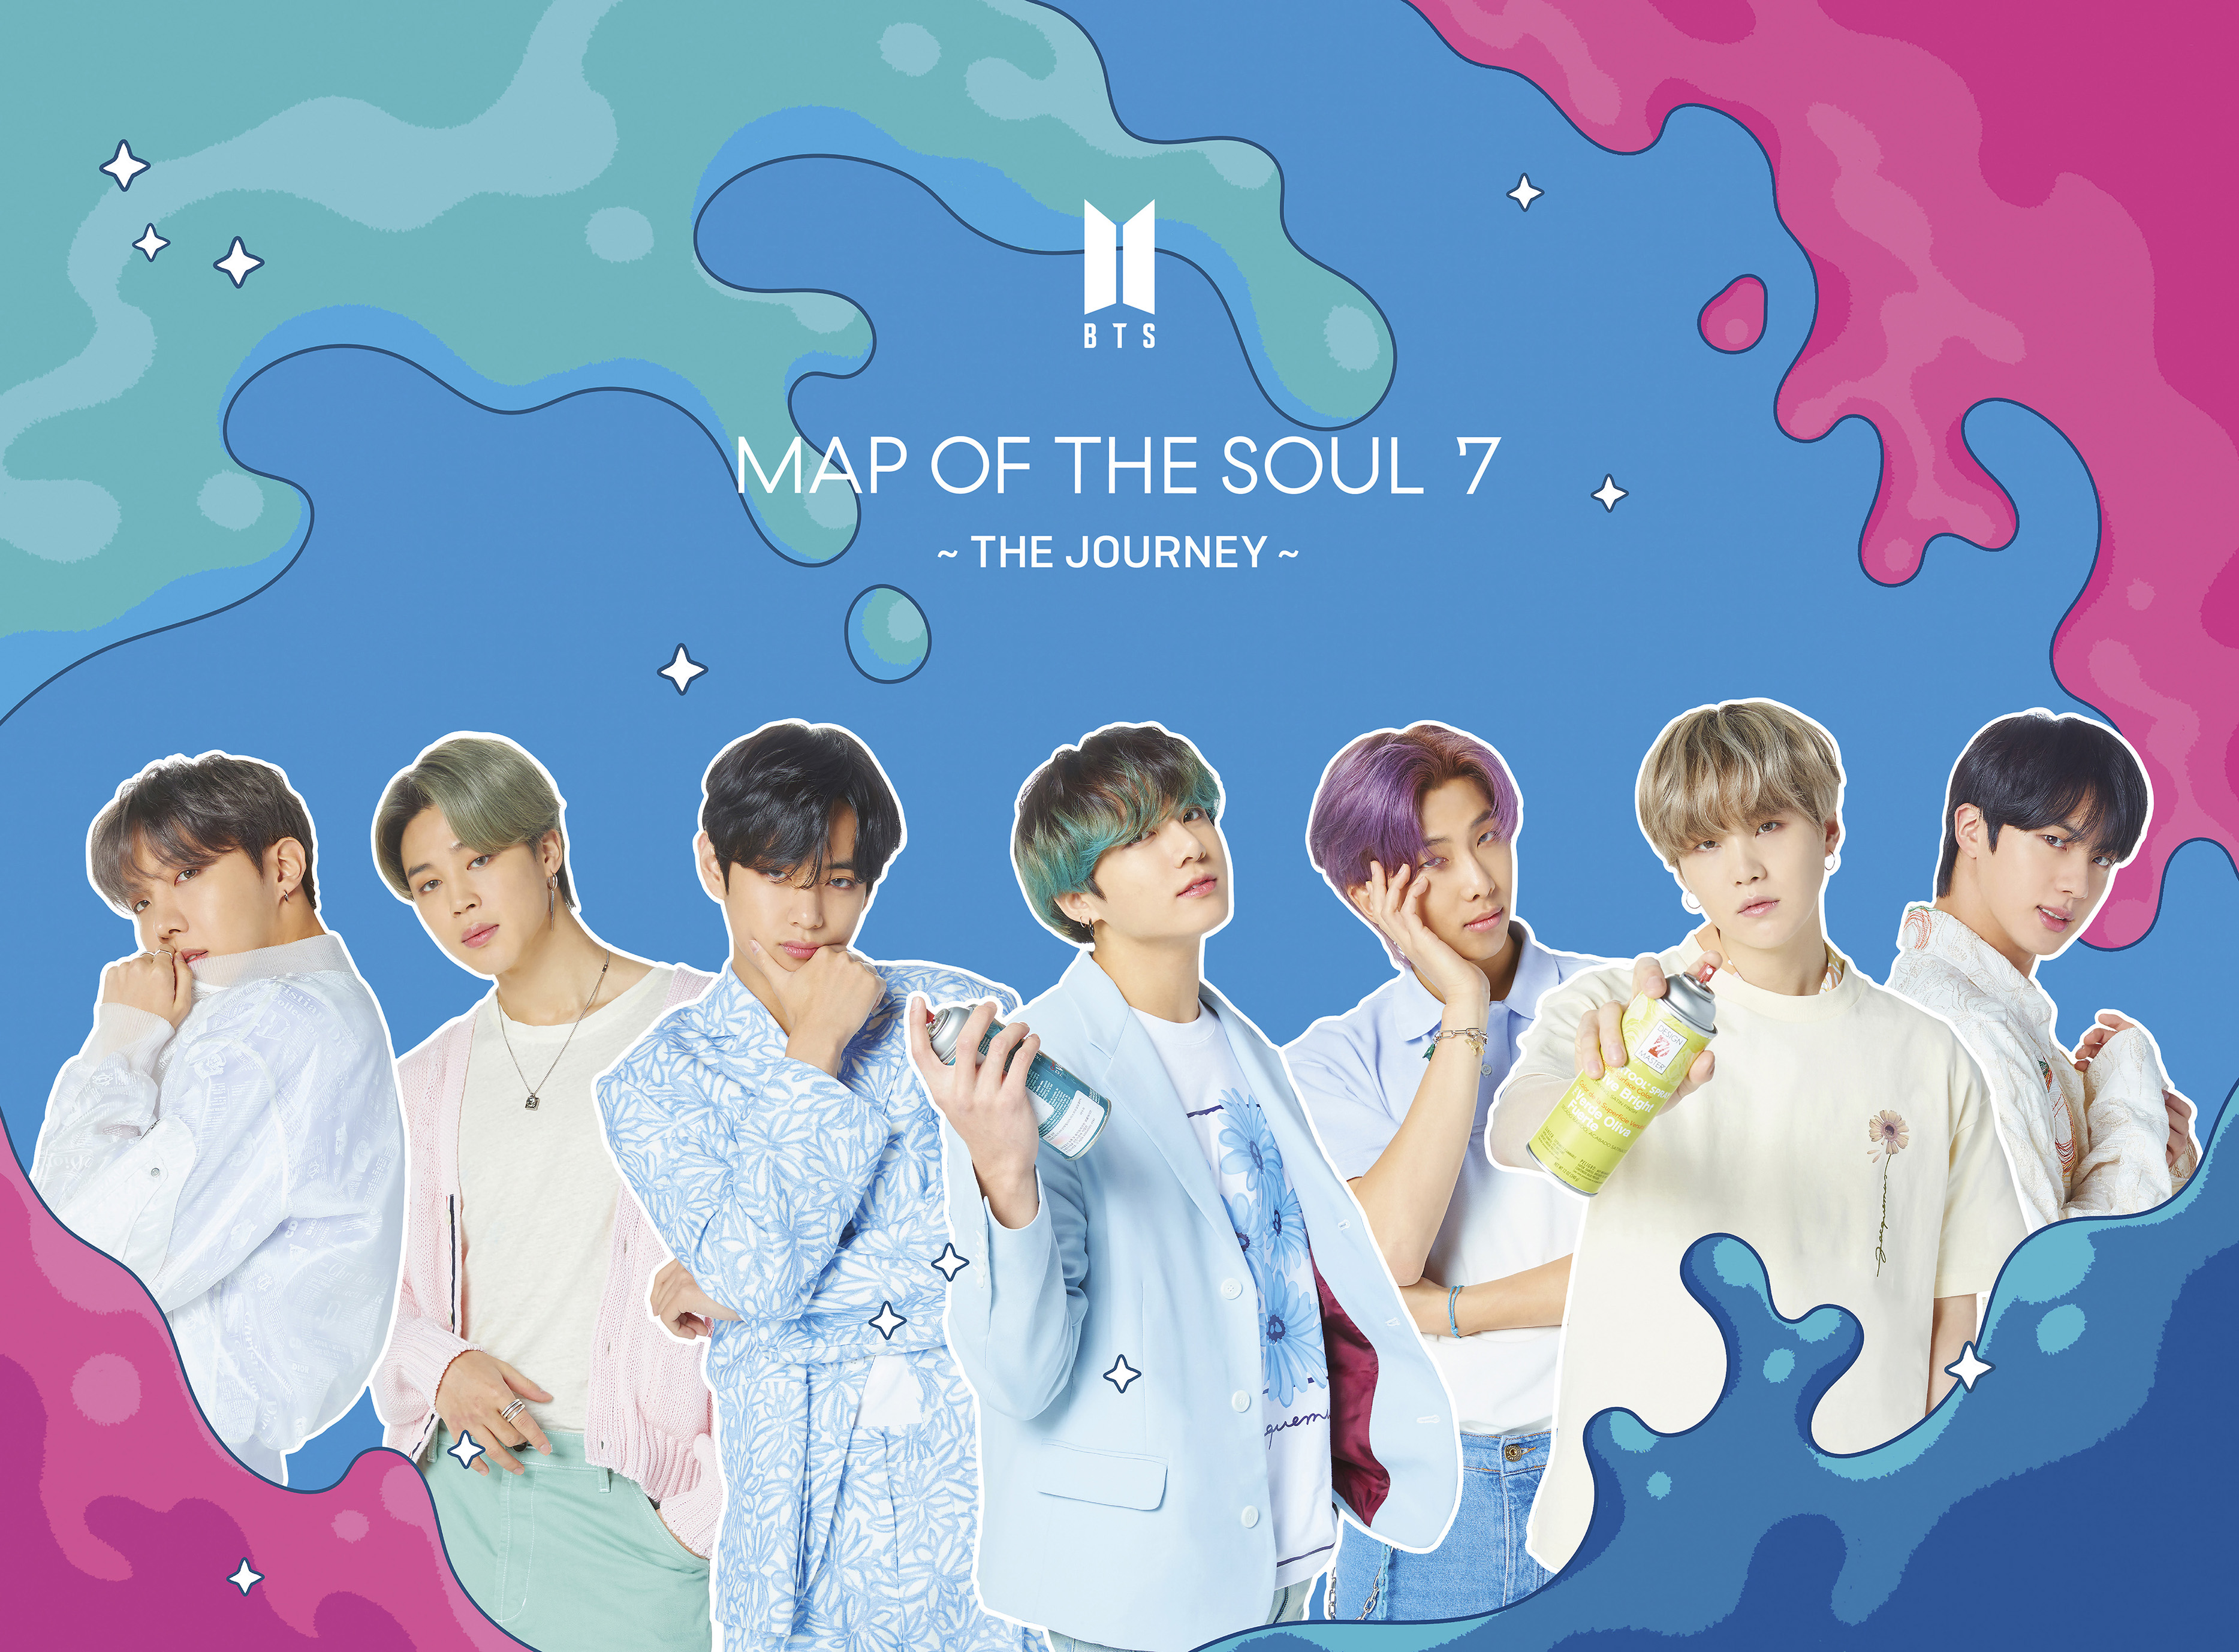 日本4thアルバム Map Of The Soul 7 The Journey ジャケット写真公開 Bts